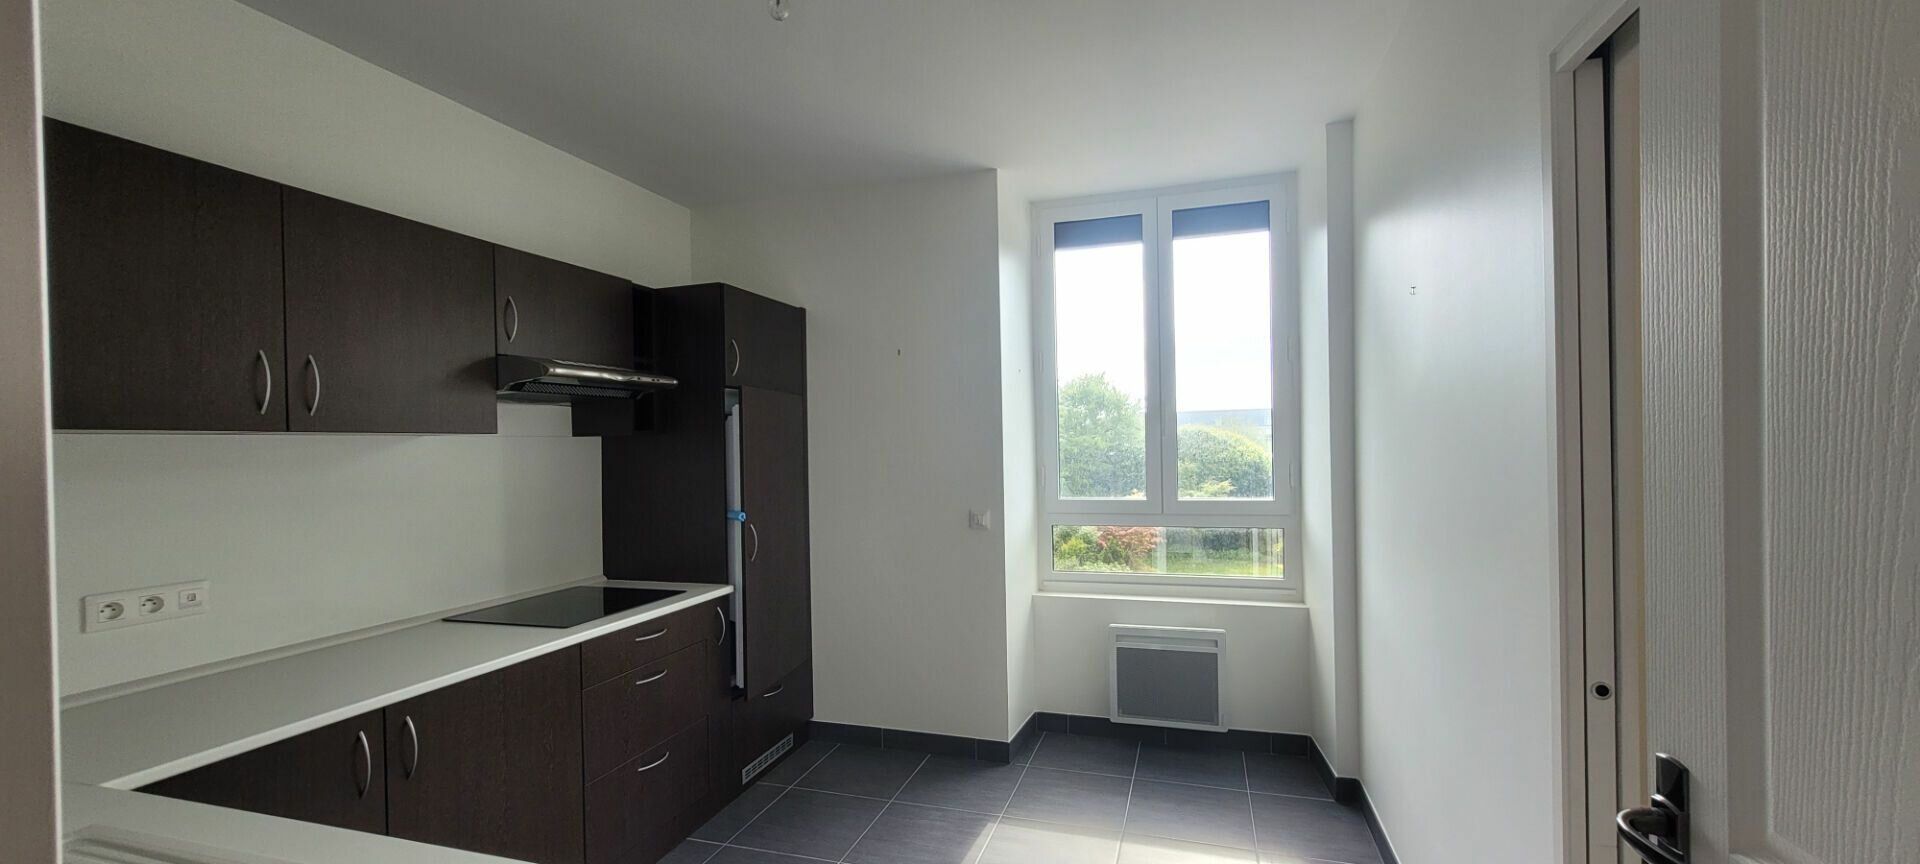 Appartement à vendre 3 109.55m2 à Saint-Brieuc vignette-5